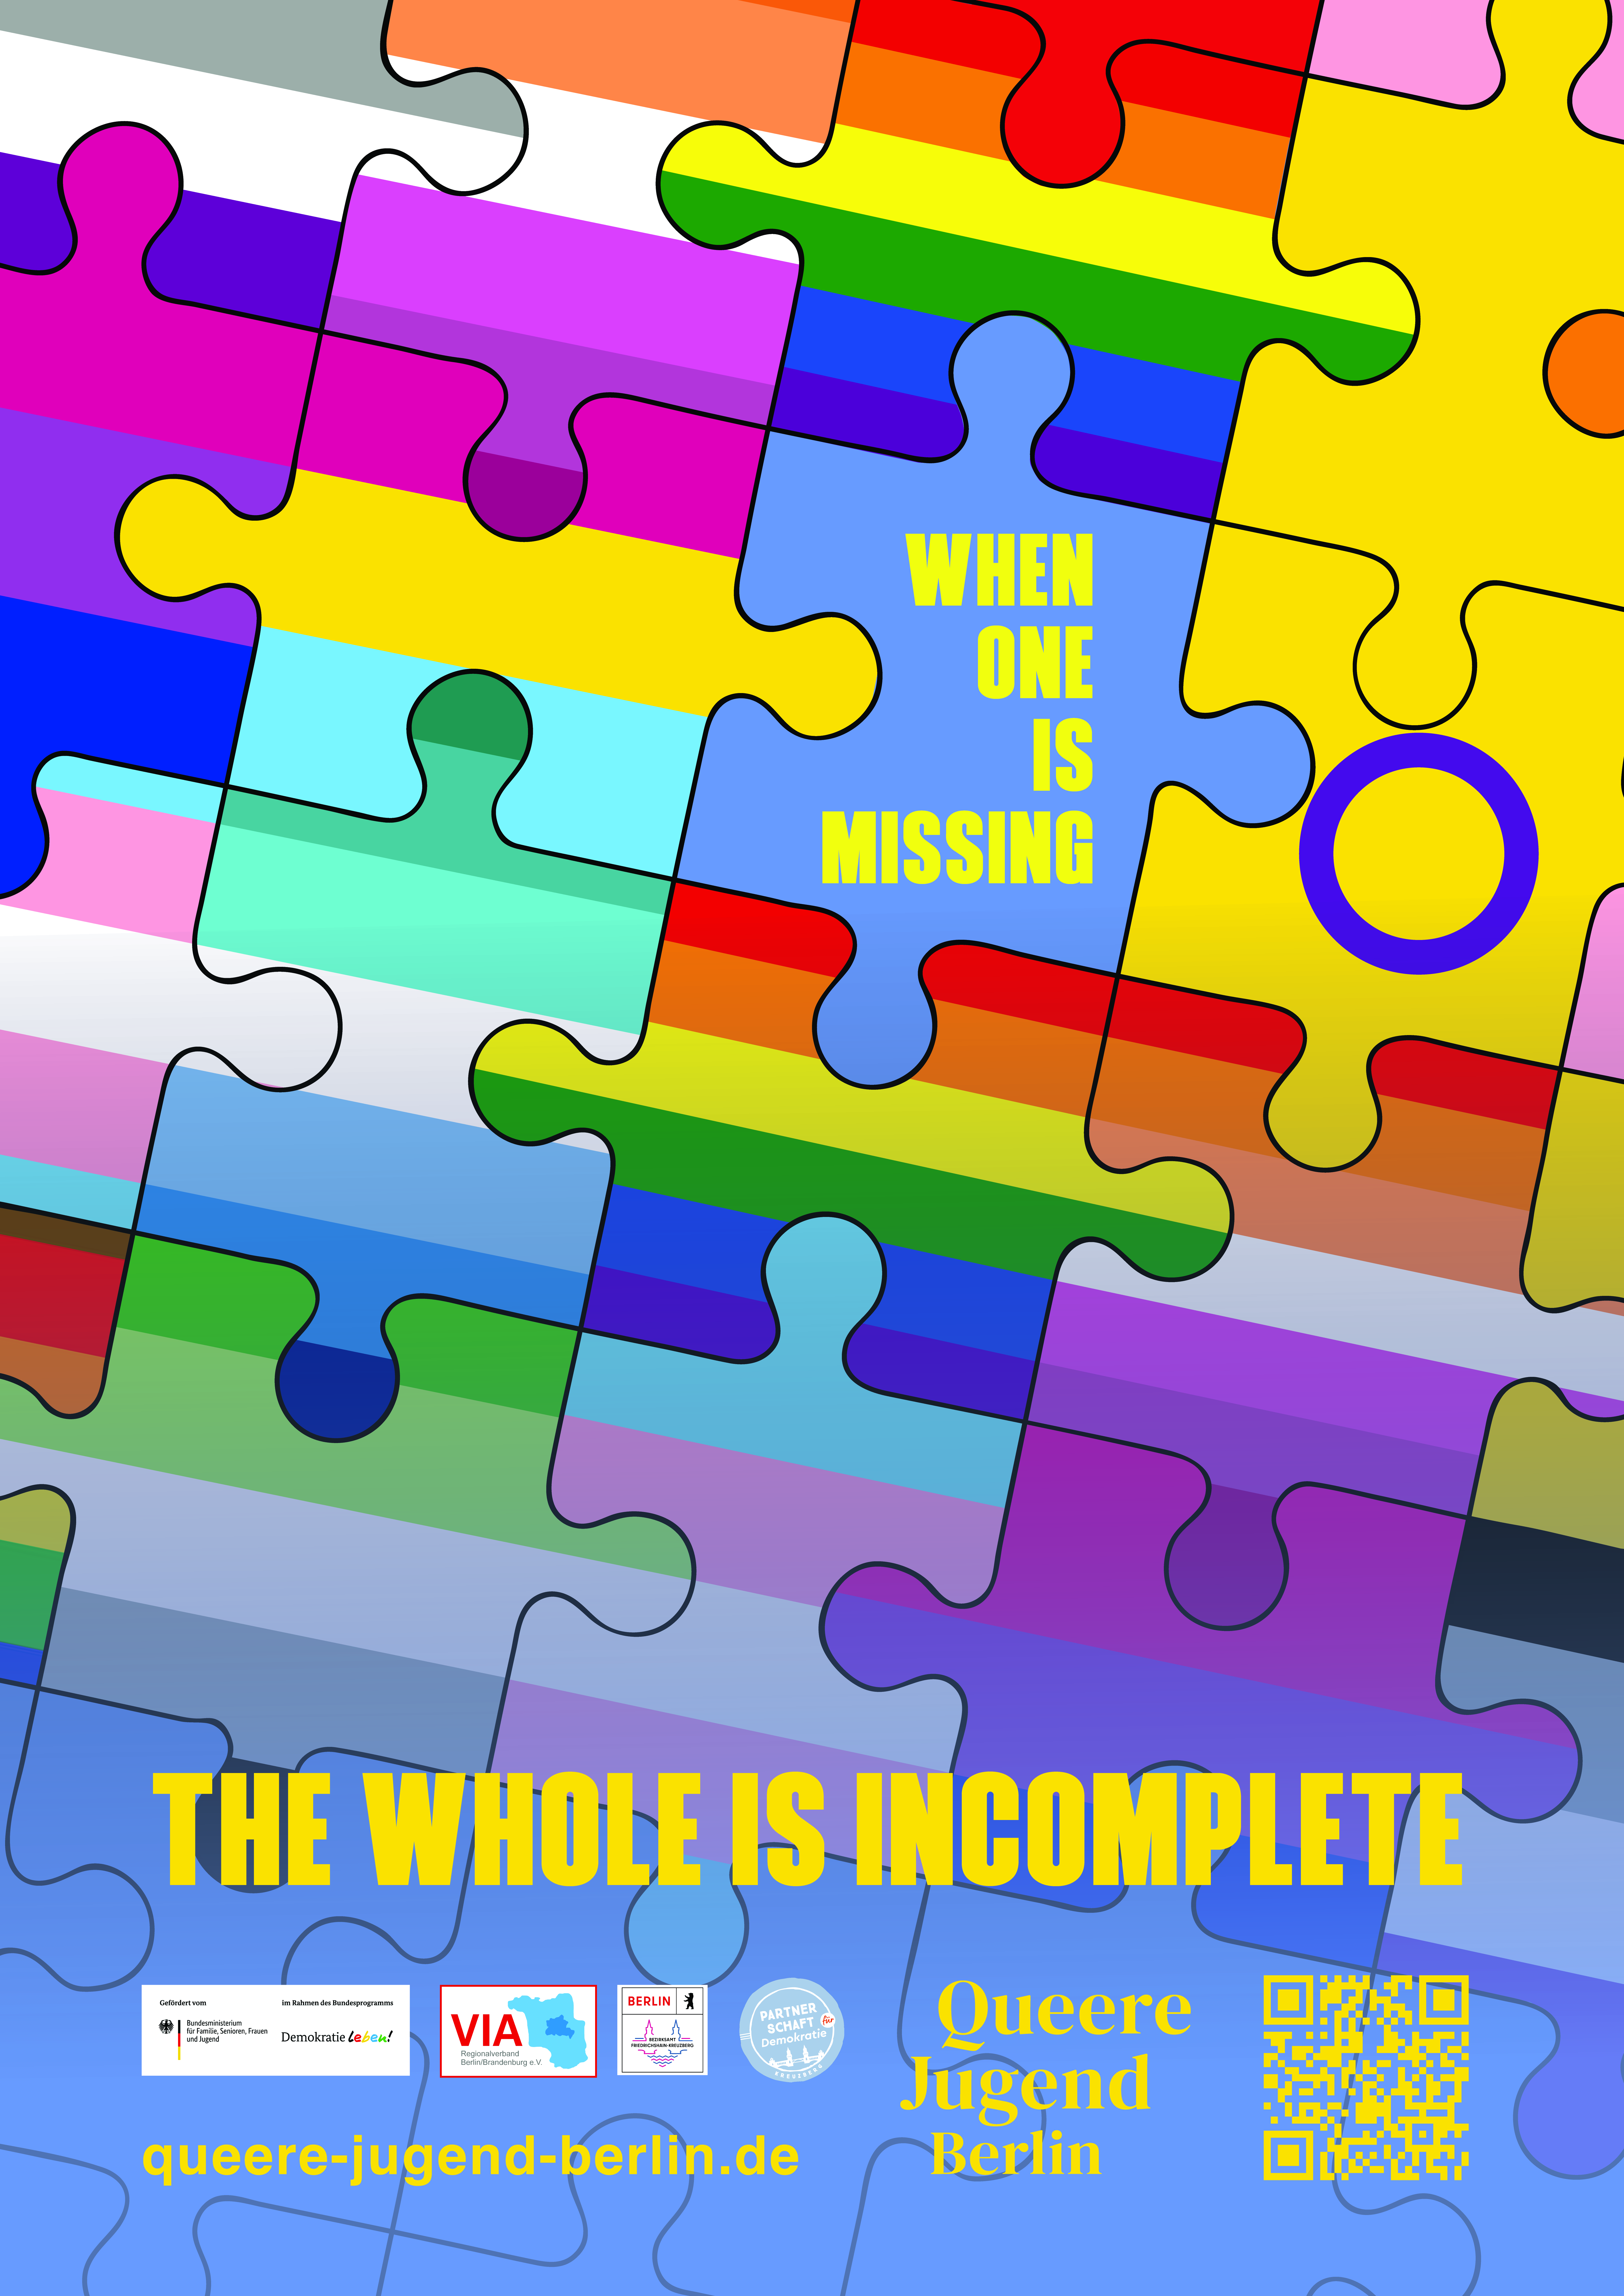 Ein Plakat bestehend aus Puzzleteilen mit verschiedenen queeren Flaggen und einem Leerfeld, in dem steht "When one is missing" und weiter unten "the whole is incomplete".